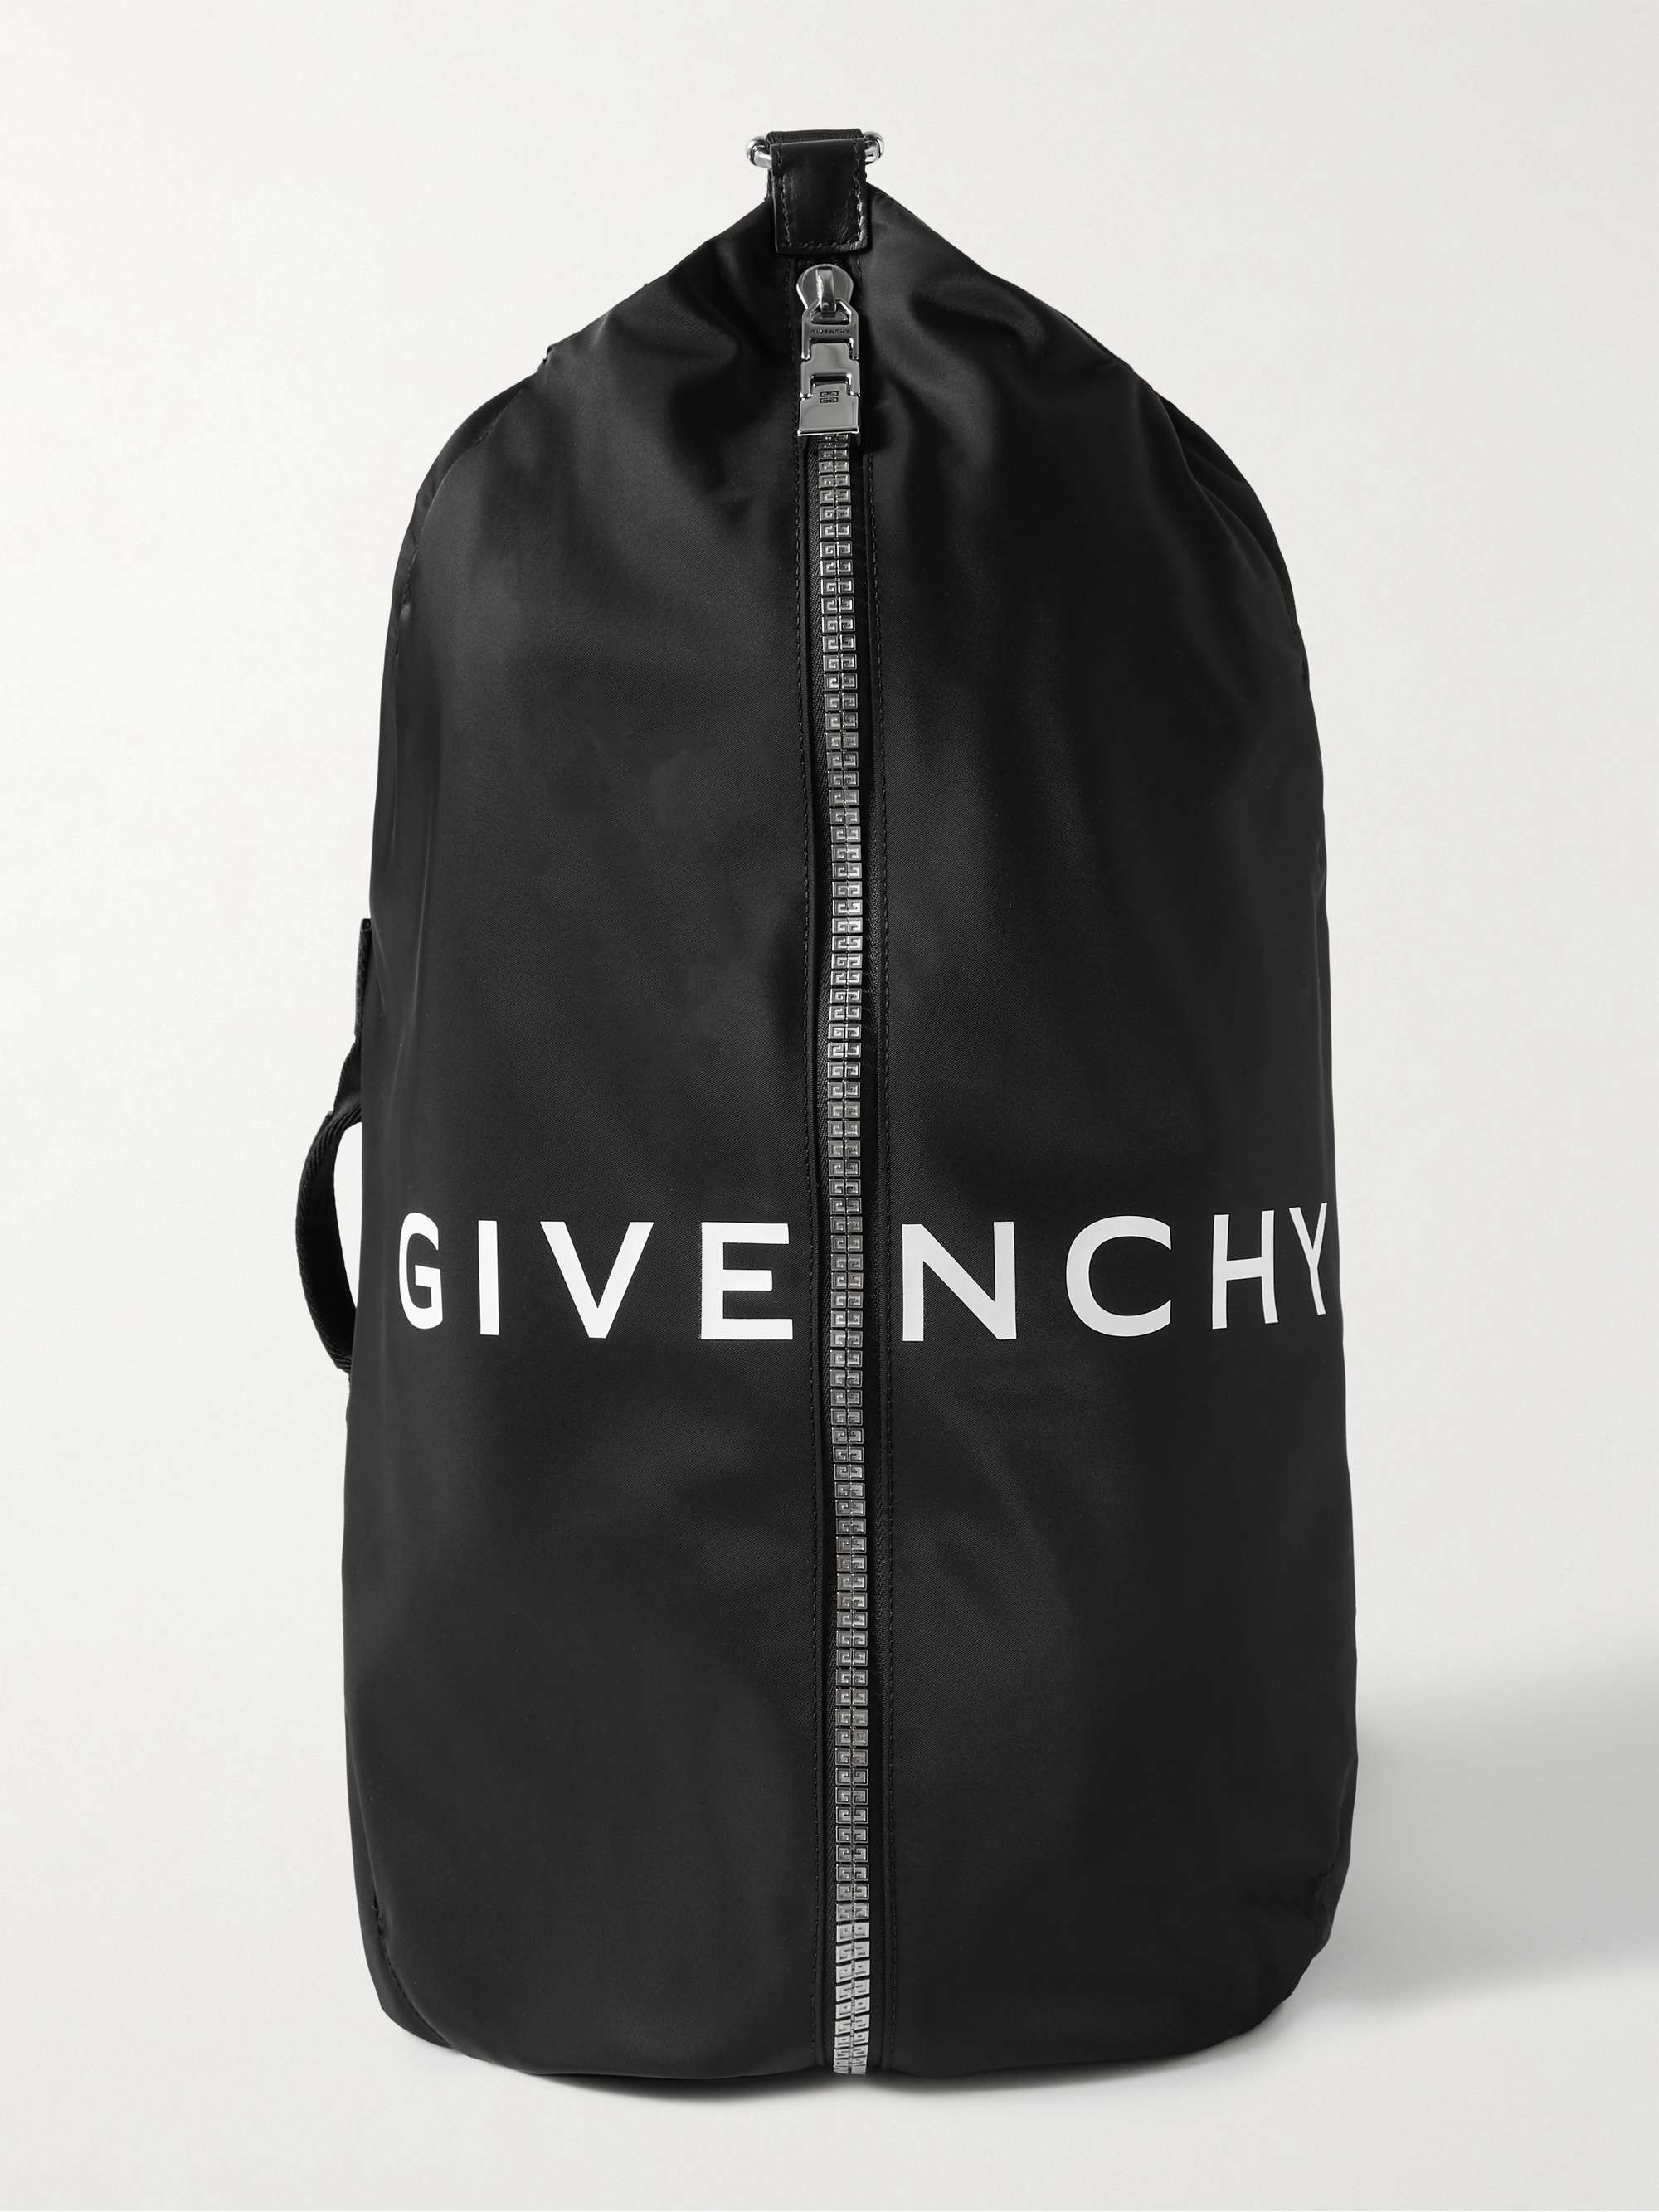 Black Fashionable Zipper Shell Bag With Adjustable Shoulder Strap